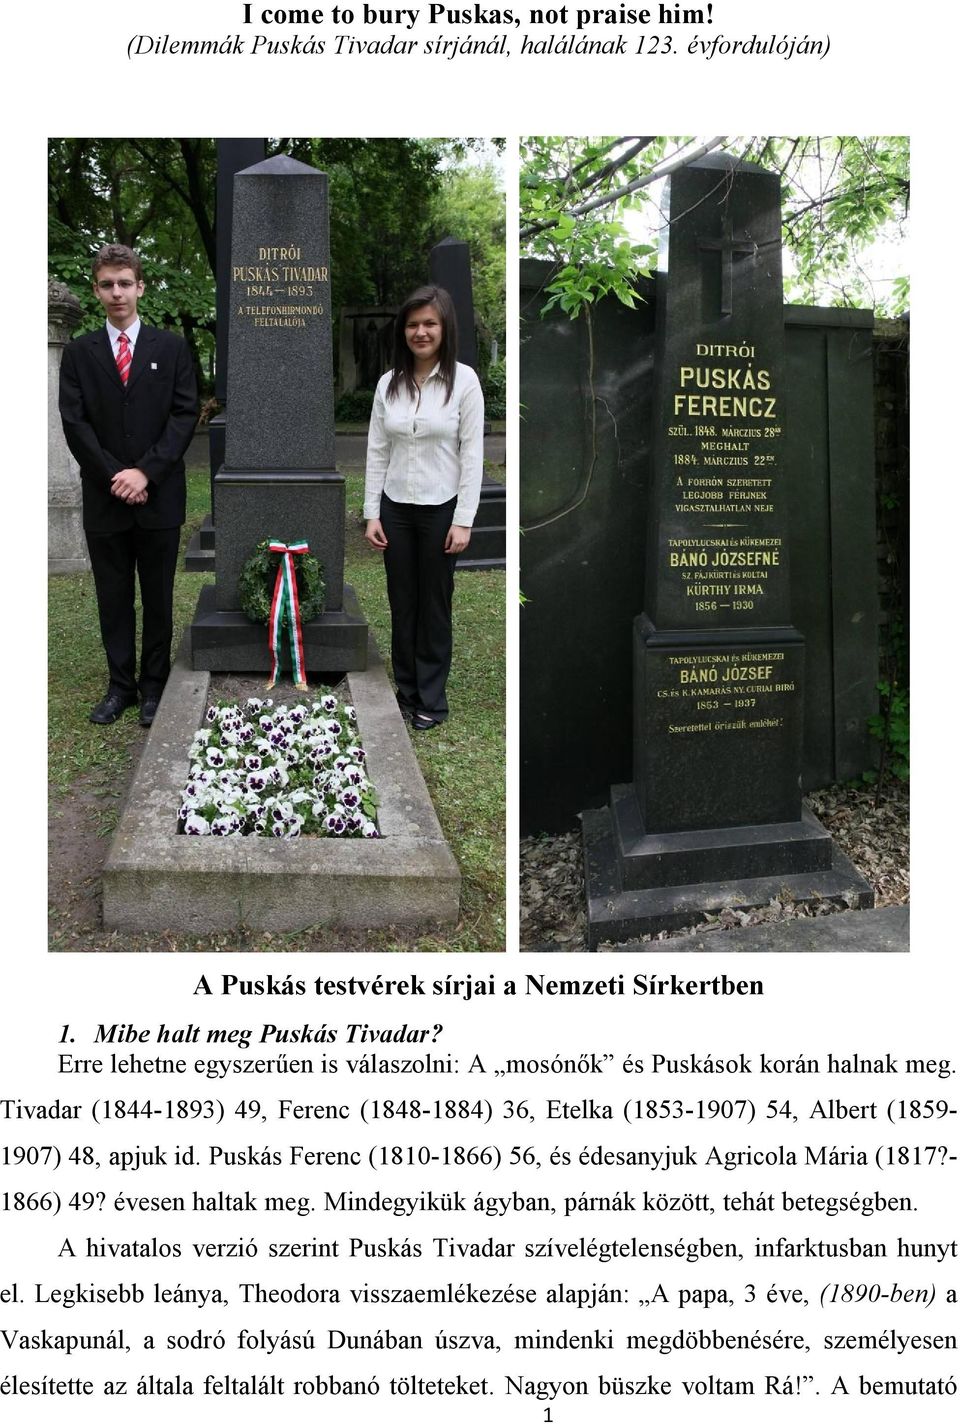 Puskás Ferenc (1810-1866) 56, és édesanyjuk Agricola Mária (1817?- 1866) 49? évesen haltak meg. Mindegyikük ágyban, párnák között, tehát betegségben.